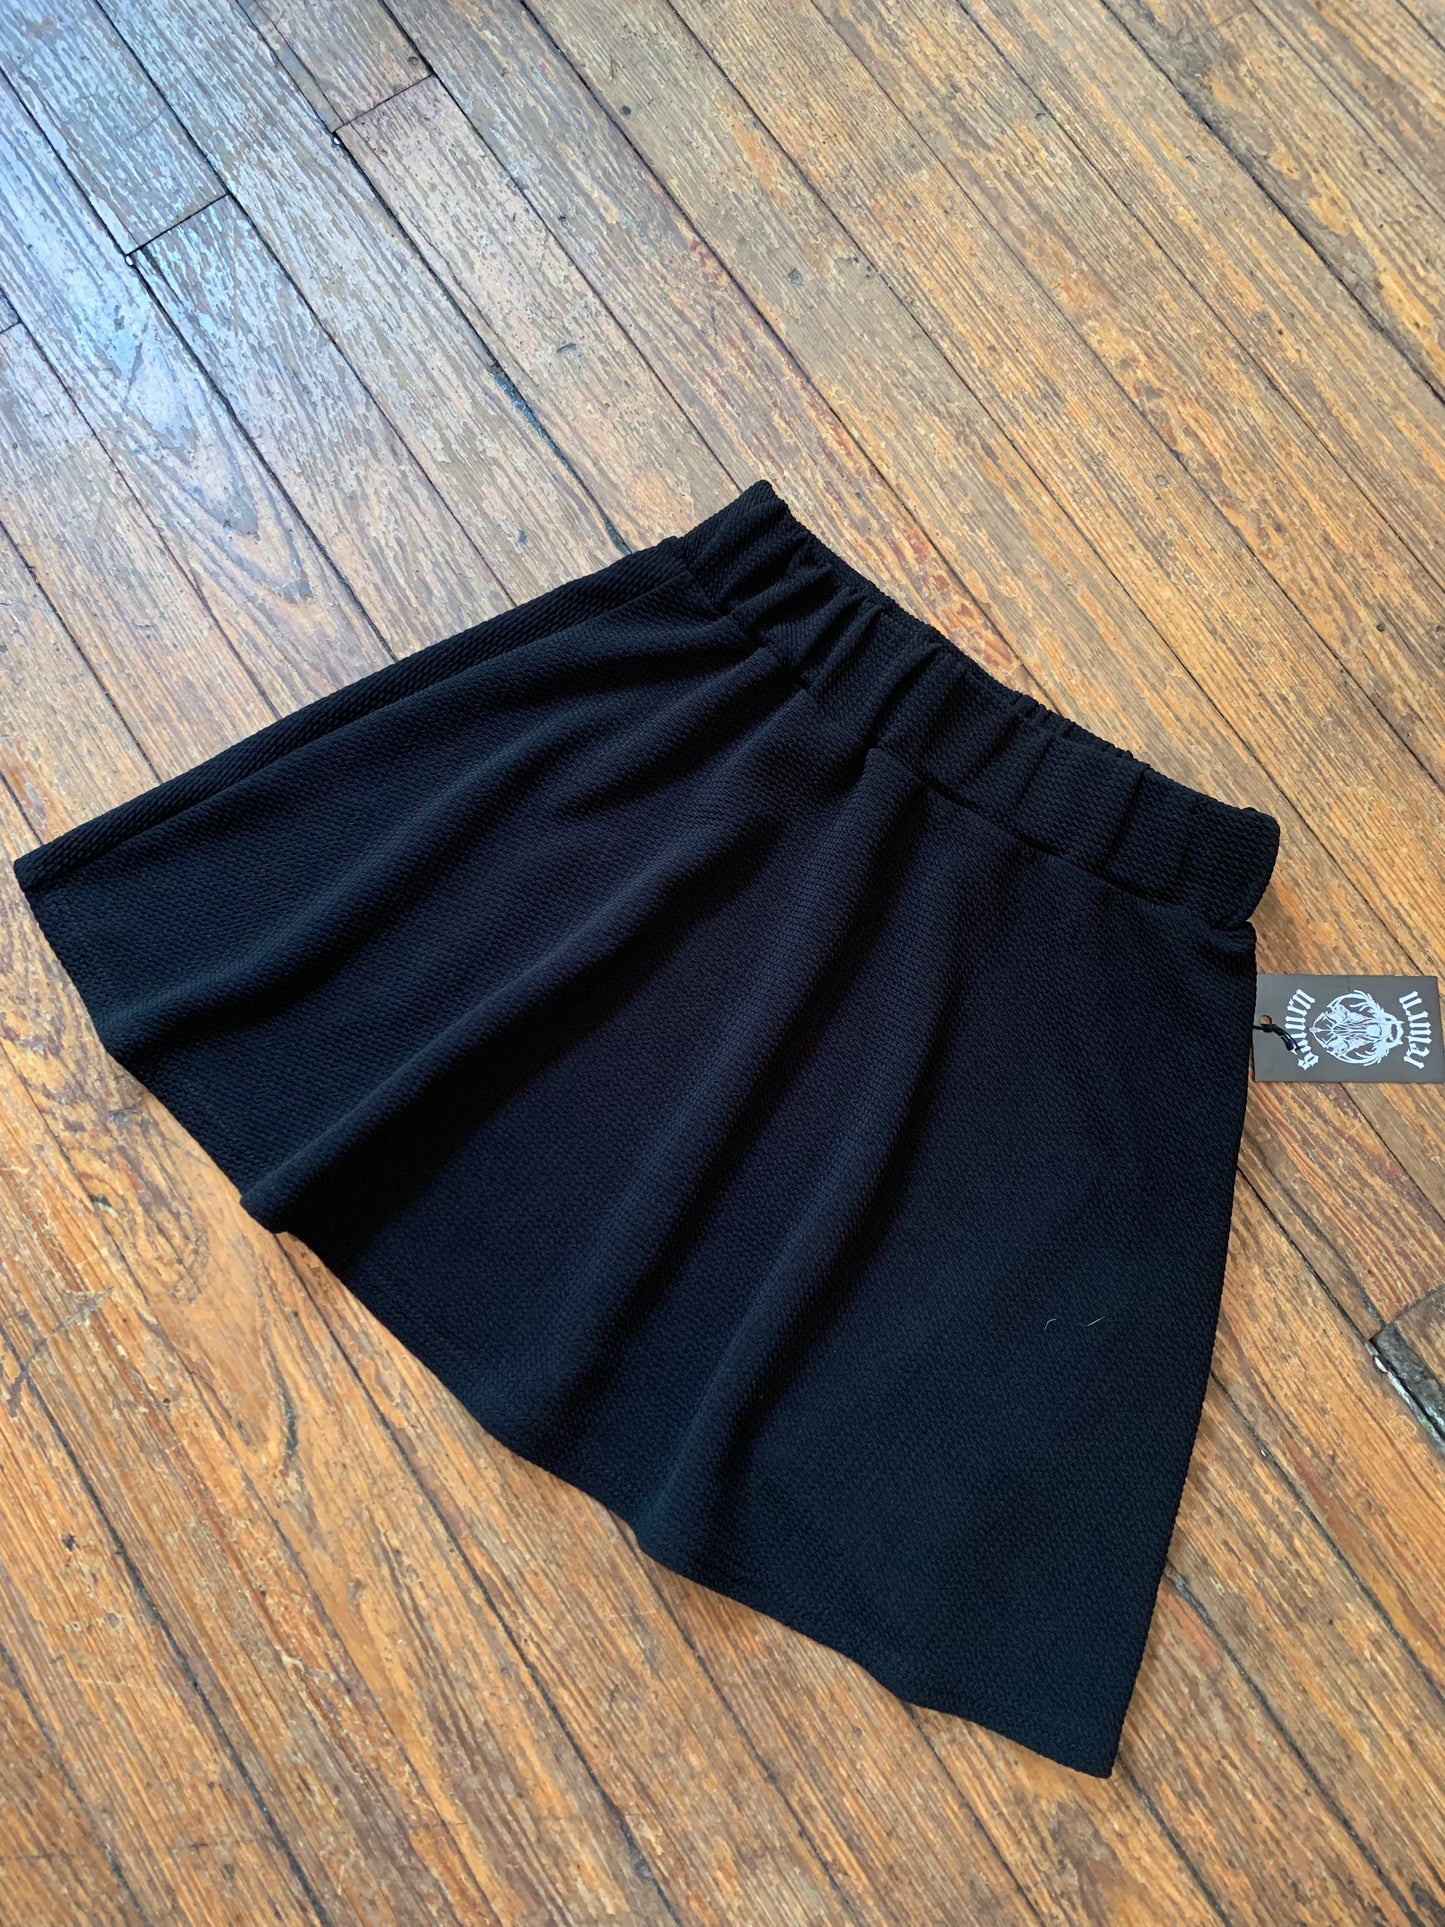 Black Textured Skater Skirt